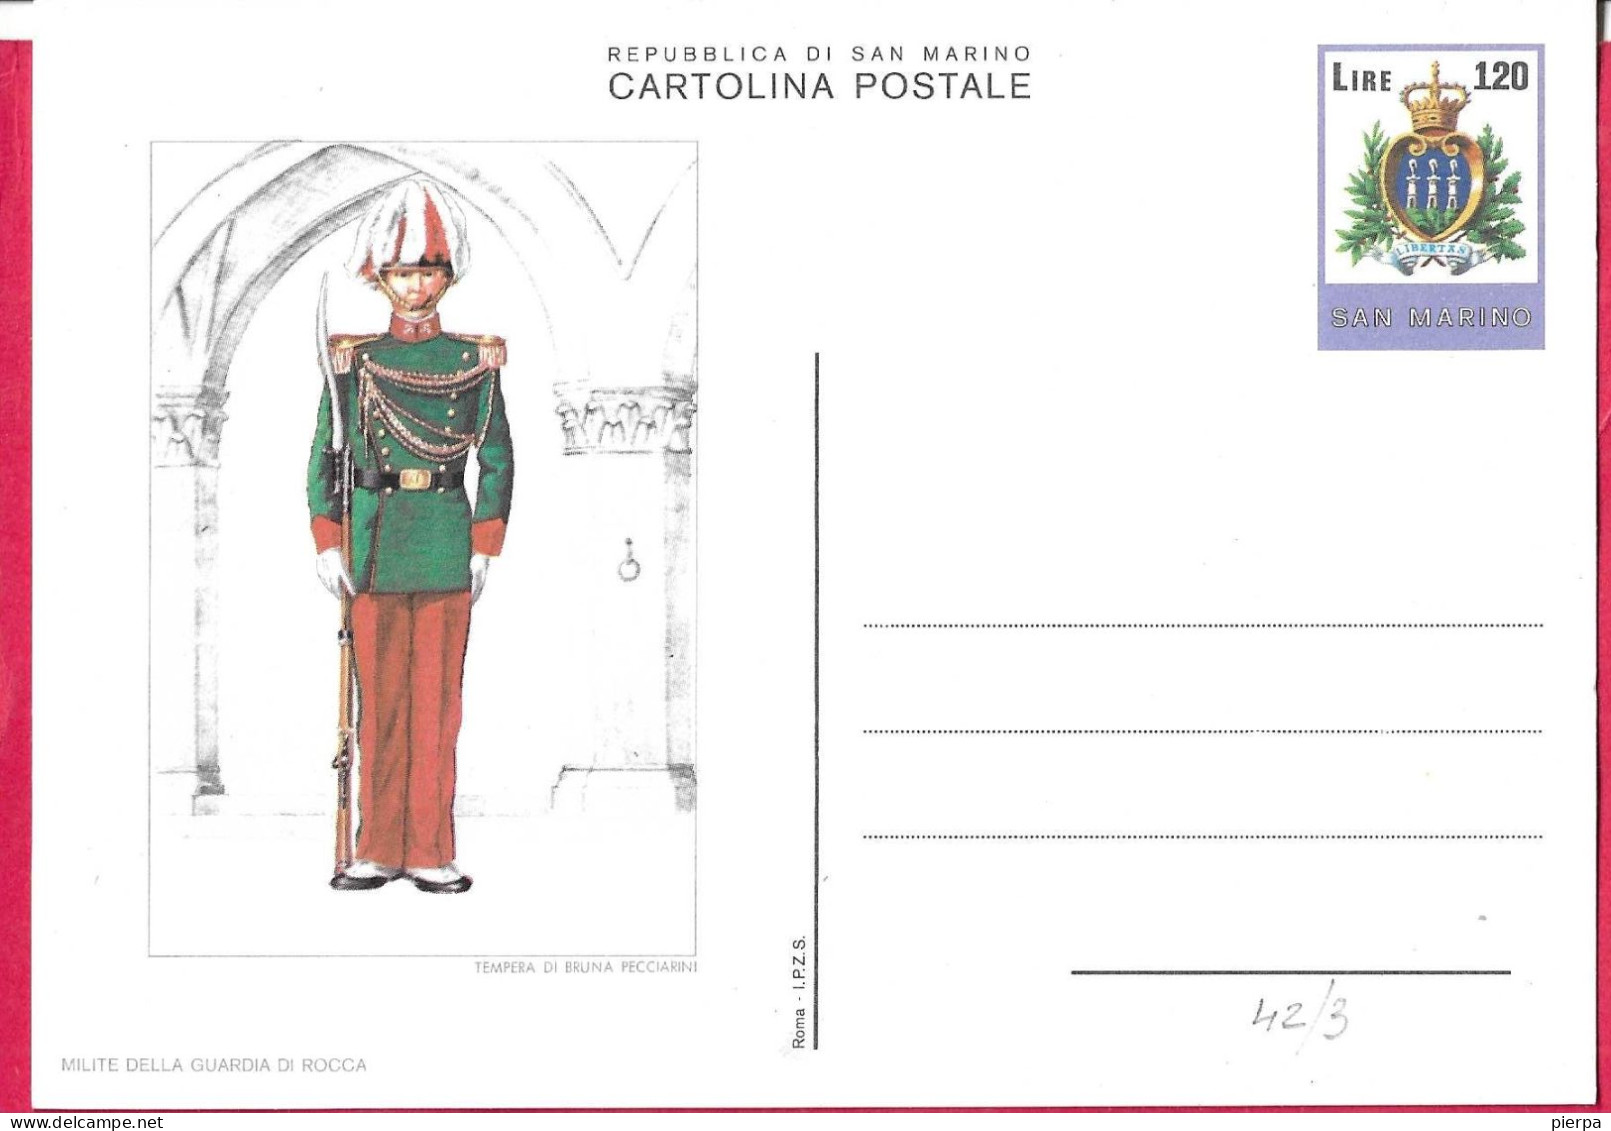 SAN MARINO - INTERO CARTOLINA POSTALE UNIFORMI (MILITE DELLA GUARDIA DI ROCCA) LIRE 120 (CAT. INT 42/3) - NUOVO - Postal Stationery